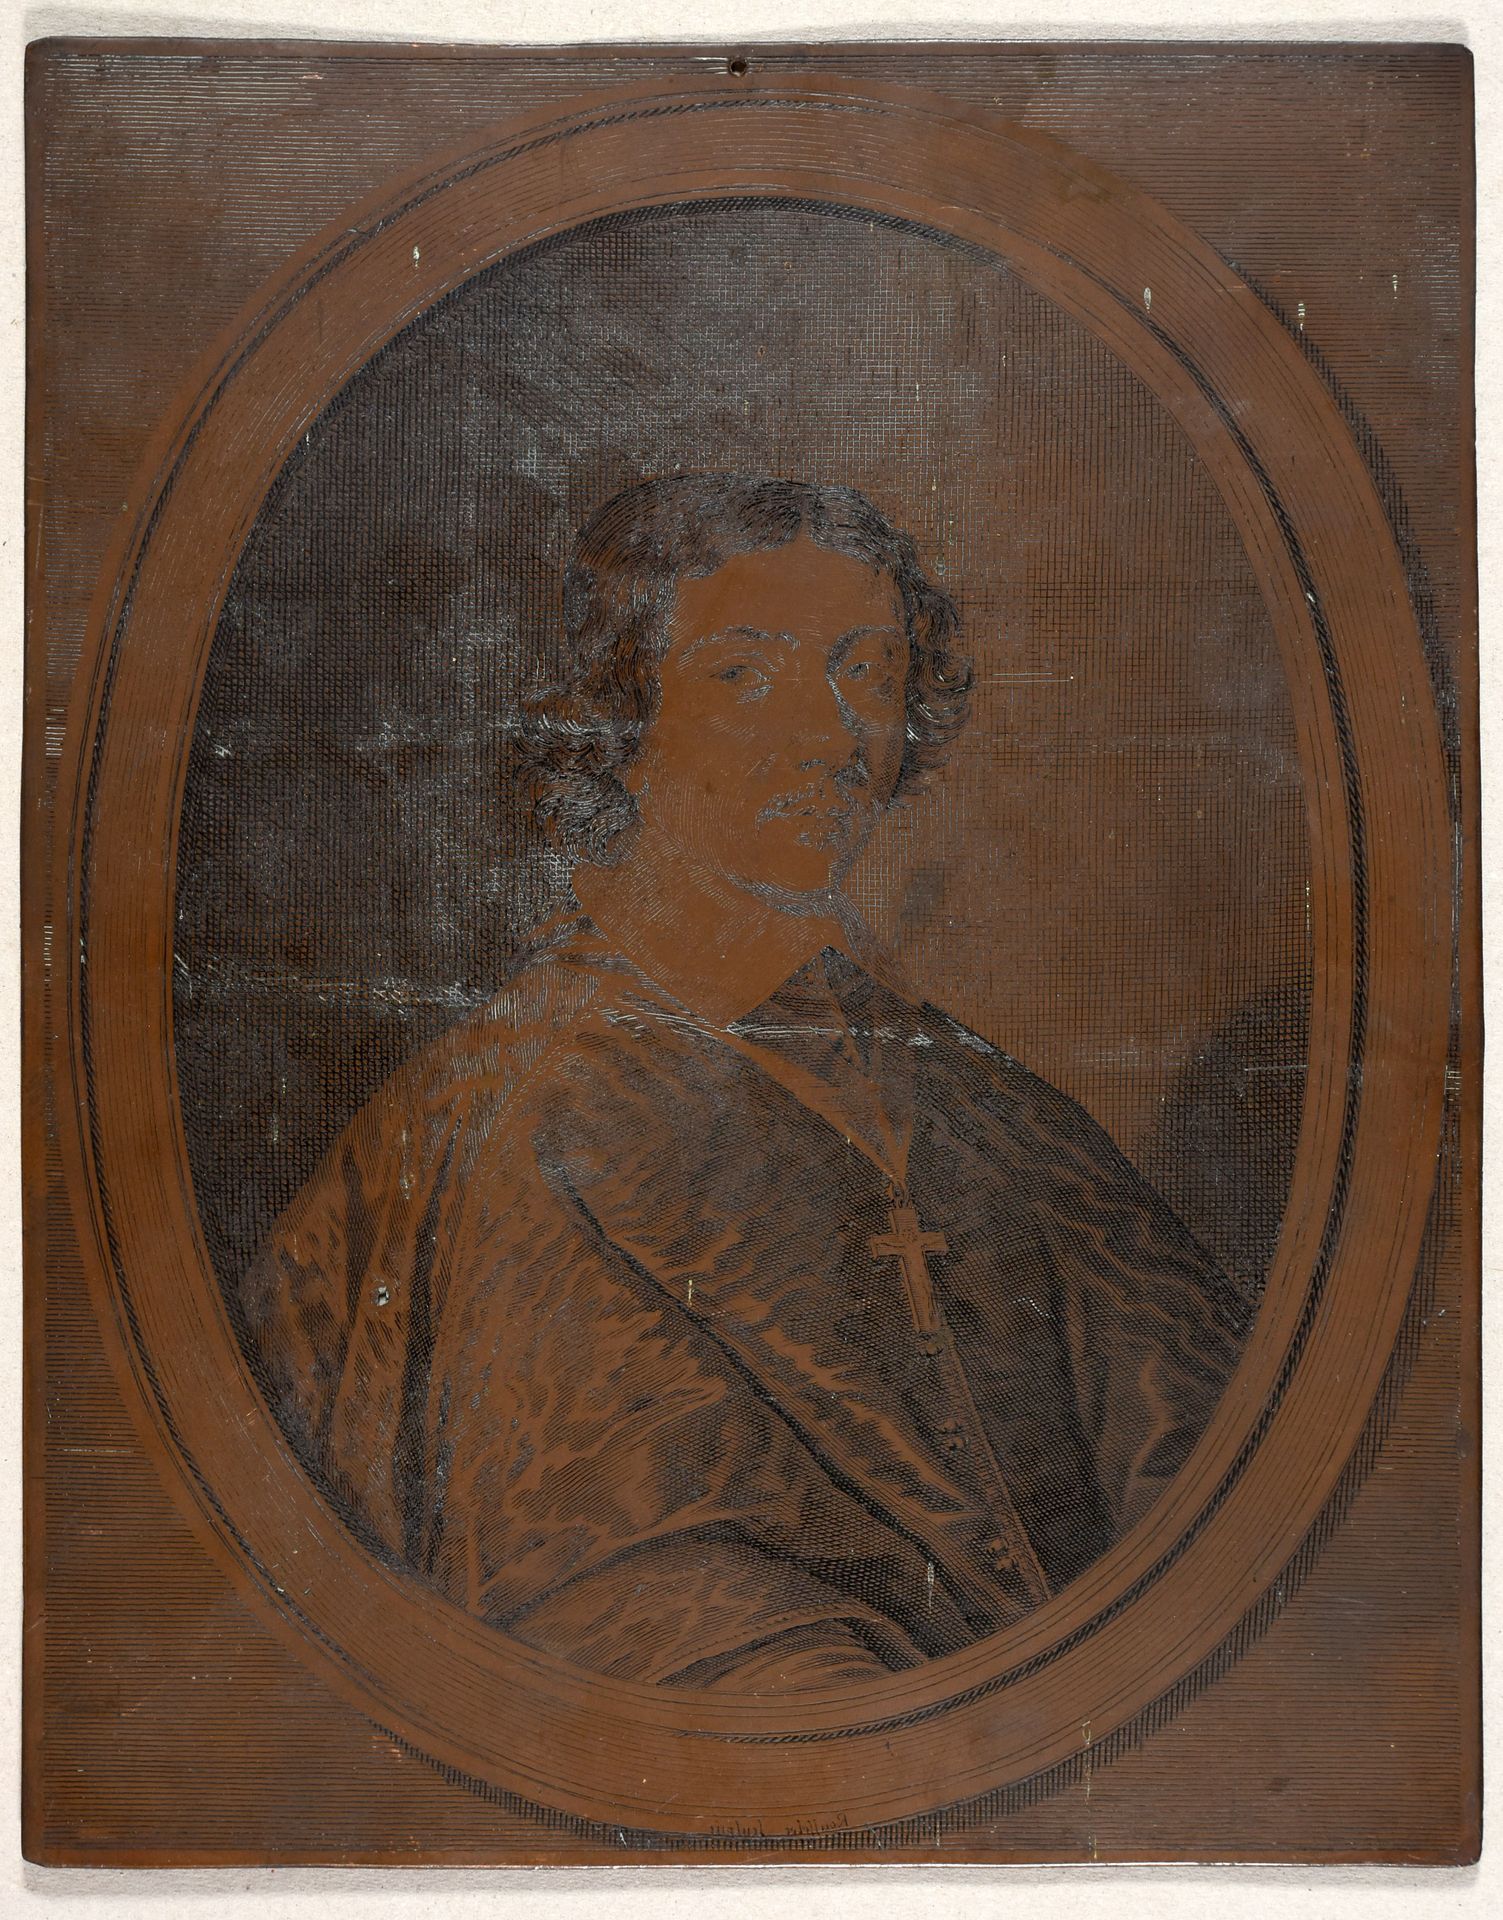 Rousselet, Gilles ROUSSELET, Gilles Porträt von Pierre de Bertier. Ca. 1650 Kupf&hellip;